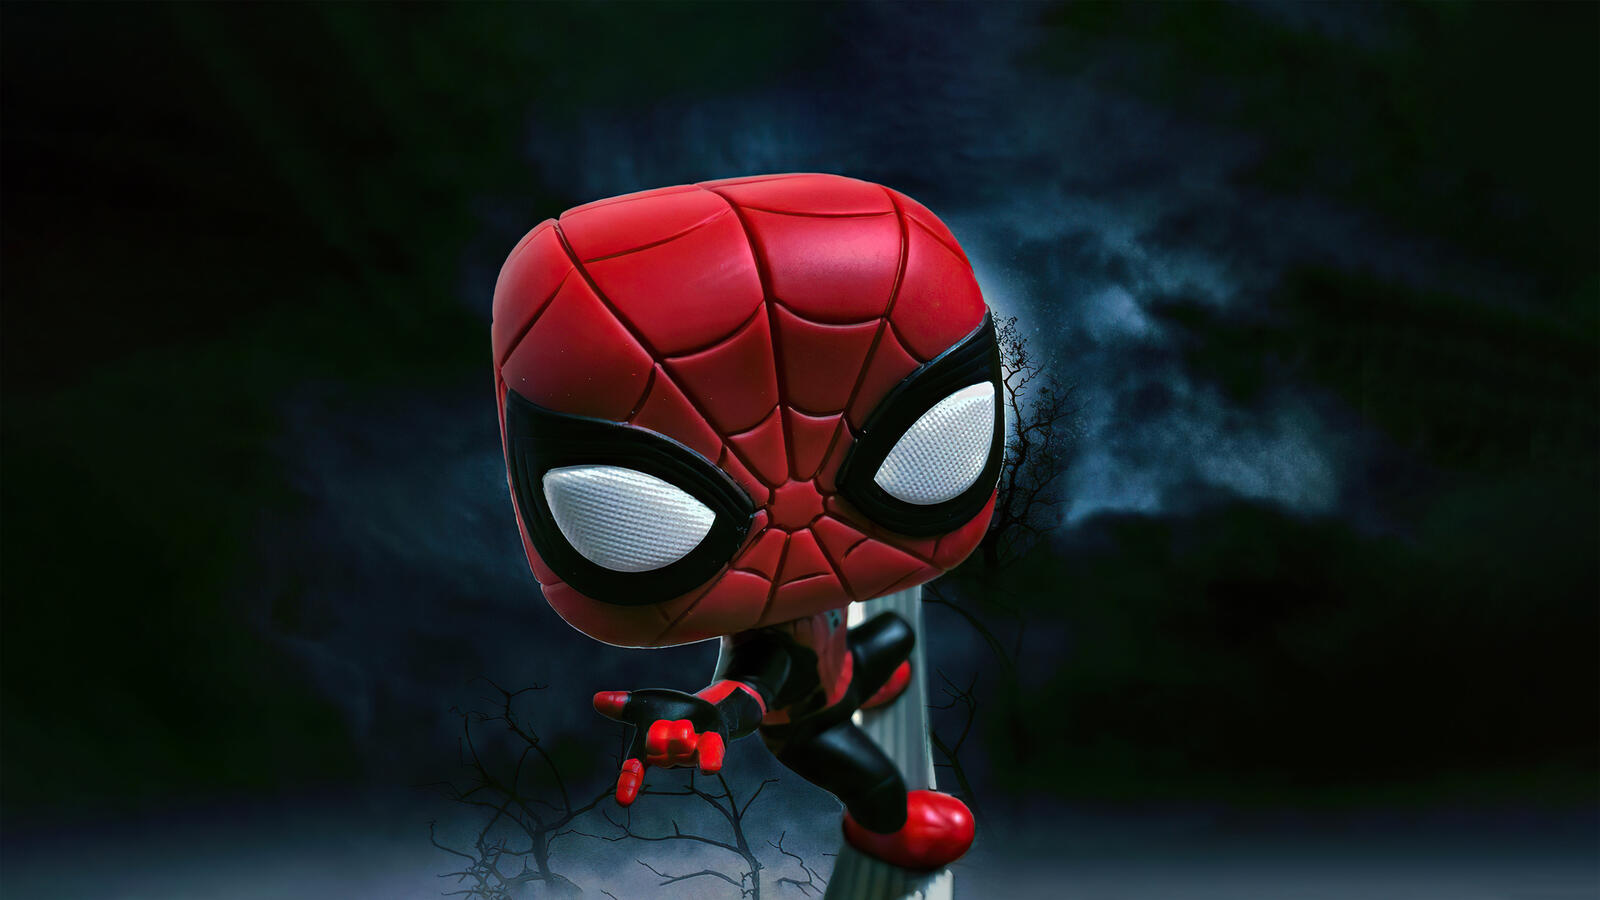 Бесплатное фото Человек паук с квадратной головой